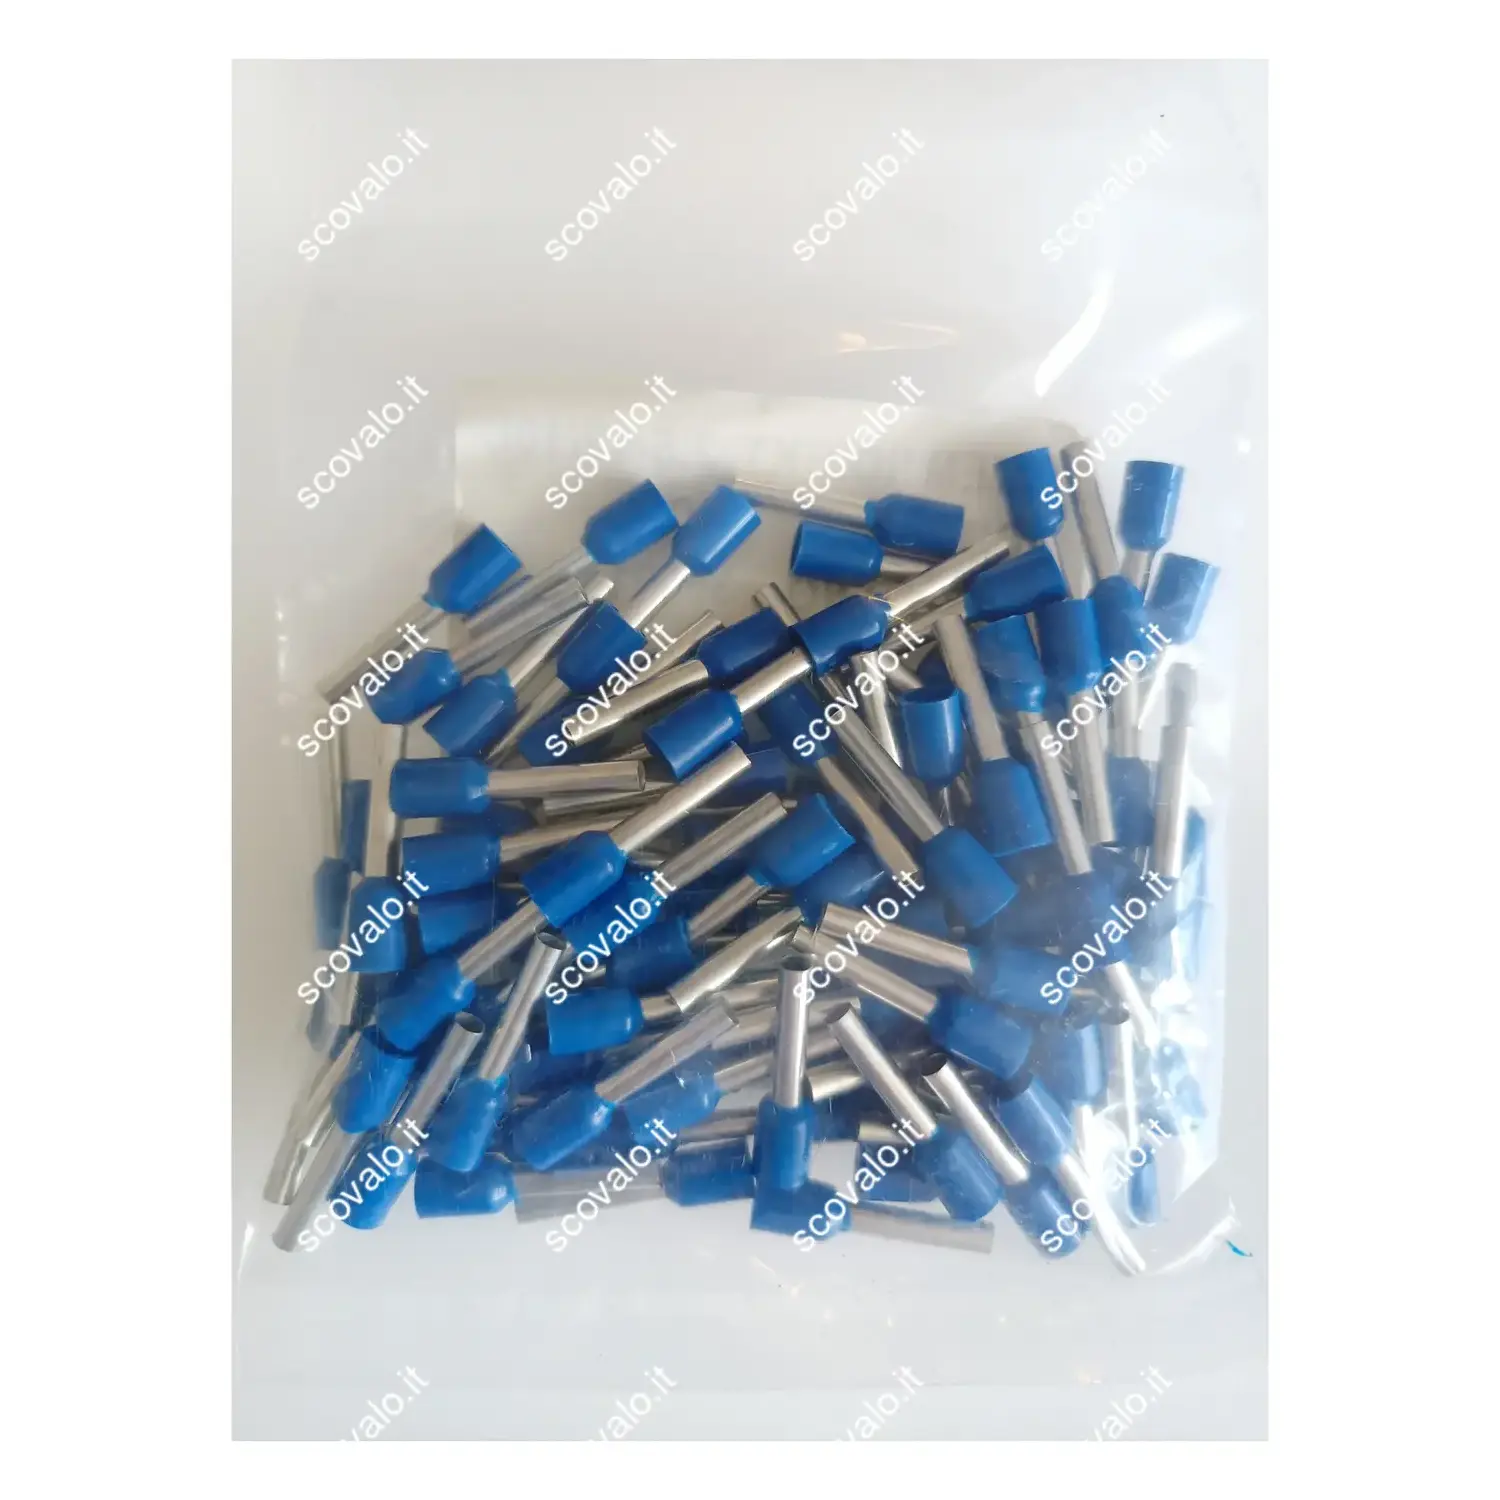 immagine del prodotto terminale capicorda puntalino cavo elettrico 2.5mm blu 100 pezzi